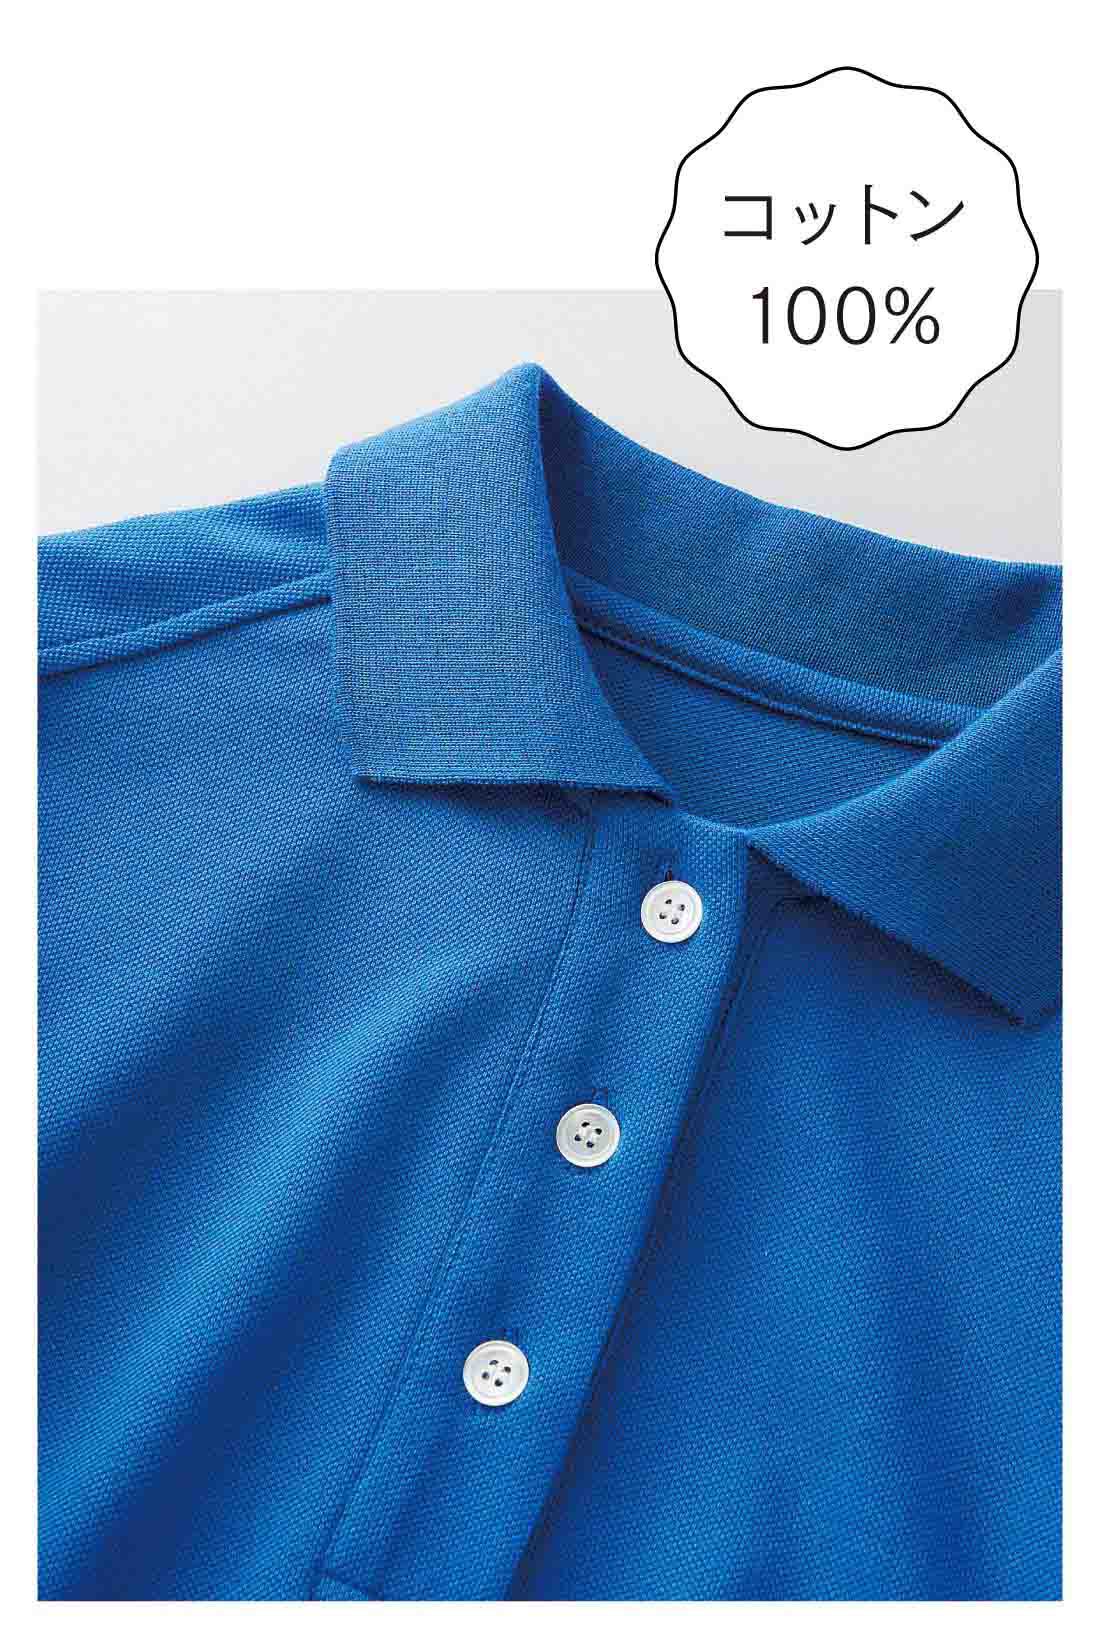 Real Stock|【おはだが気になるみんなへ】コットン100％ かのこ編みの涼やかパフスリーブポロシャツ〈ブルー〉|リブの衿まで綿100％にこだわった、さらっとやわらかな肌心地のかのこ編みカットソー。